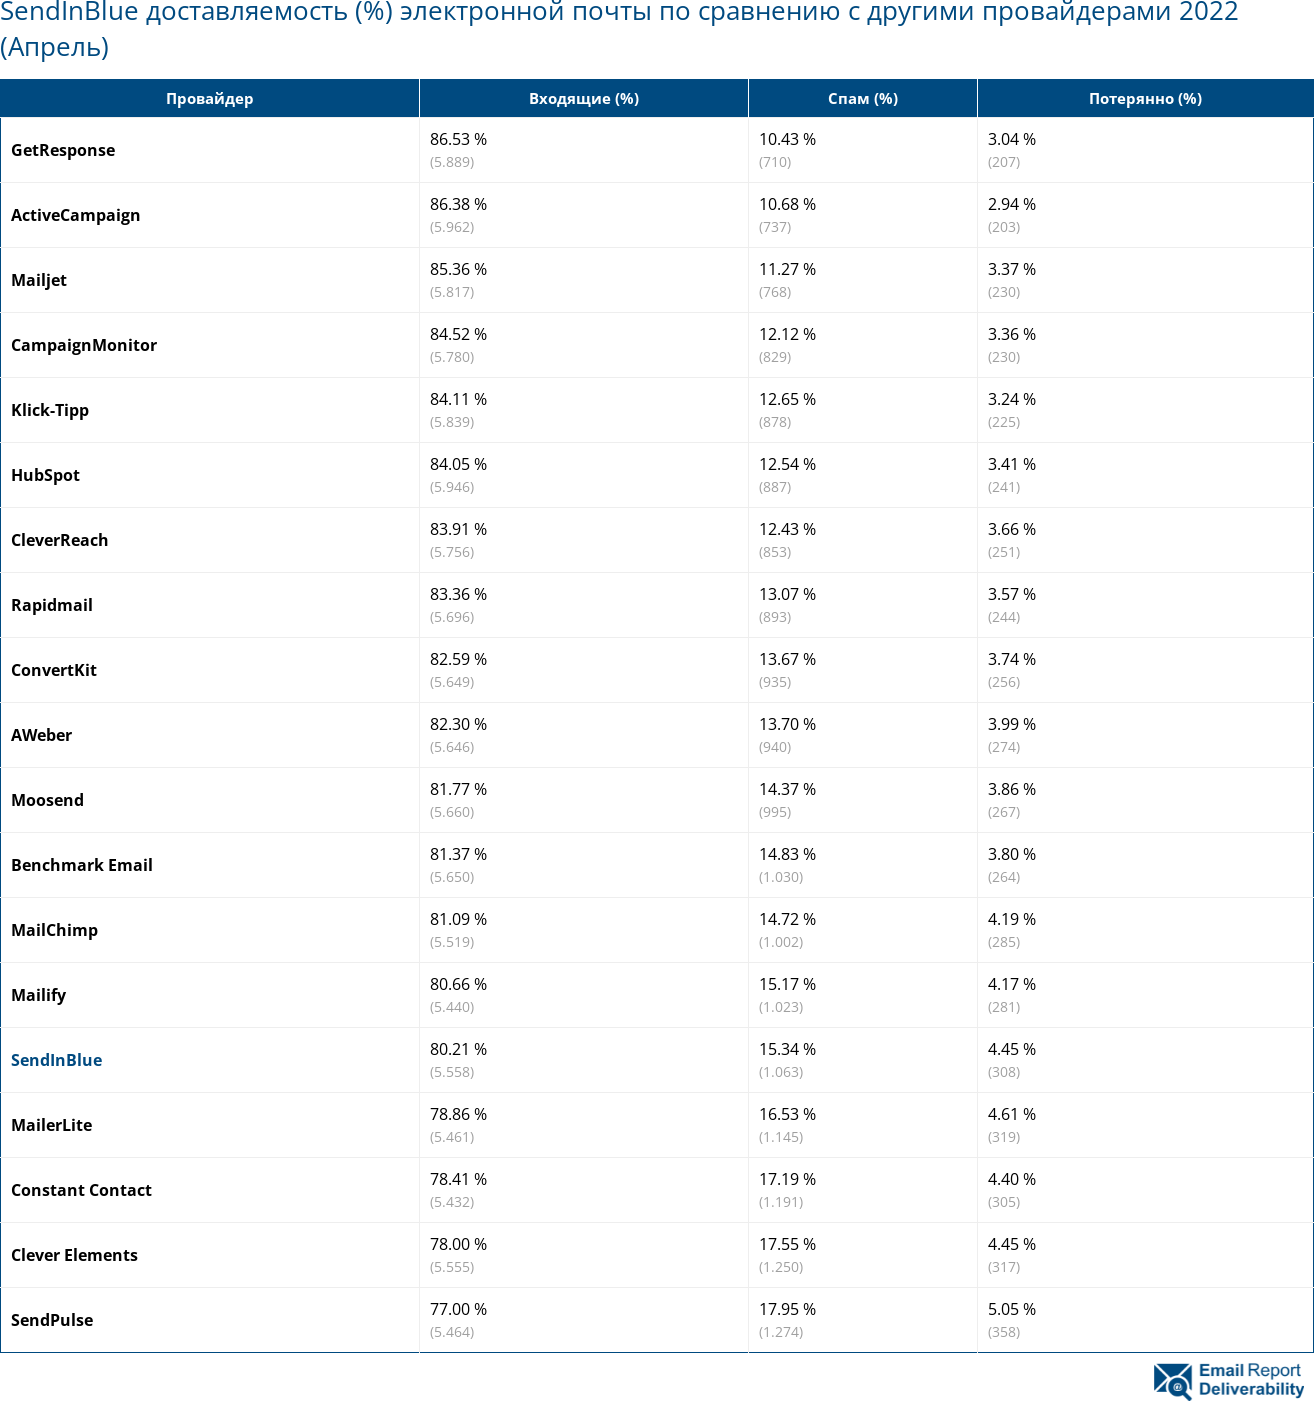 SendInBlue доставляемость (%) электронной почты по сравнению с другими провайдерами 2022 (Апрель)